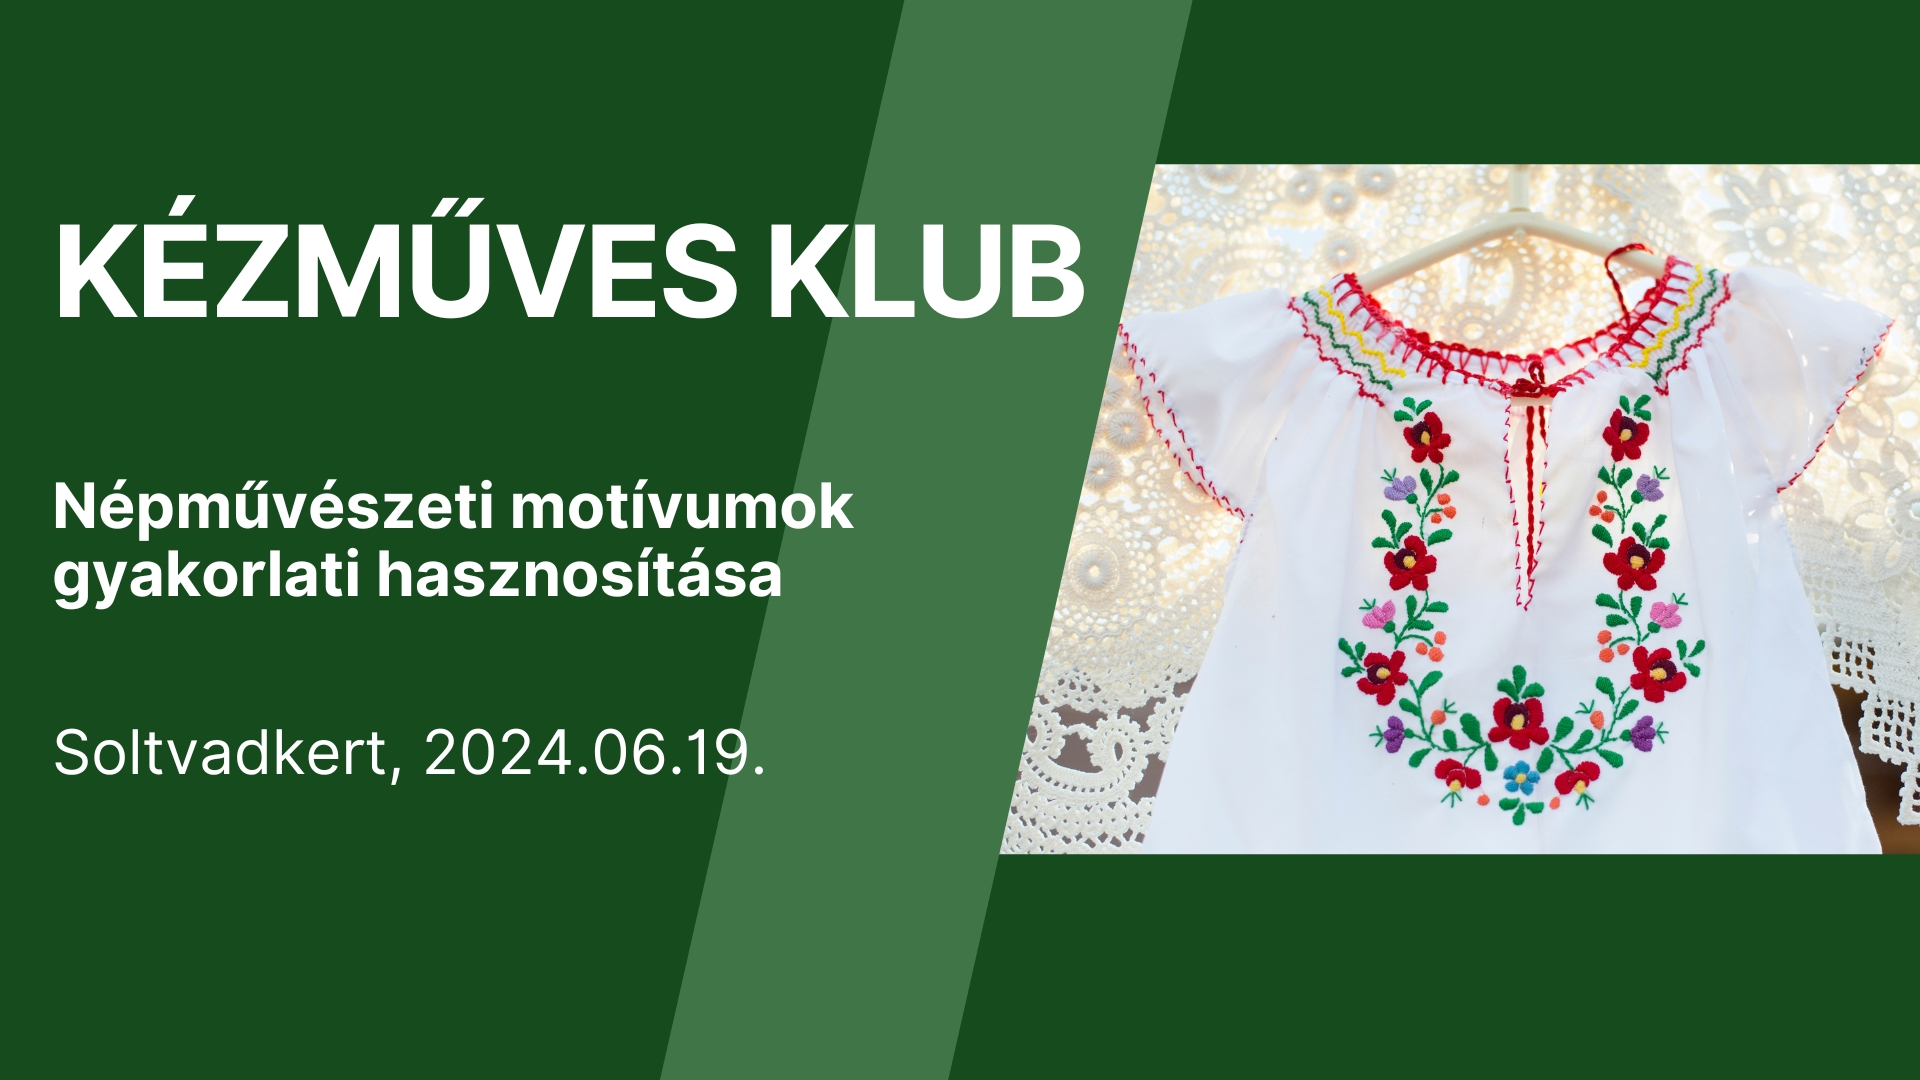 KÉZMŰVES KLUB - Népművészeti motívumok gyakorlati hasznosítása - Soltvadkert, 2024.06.19.